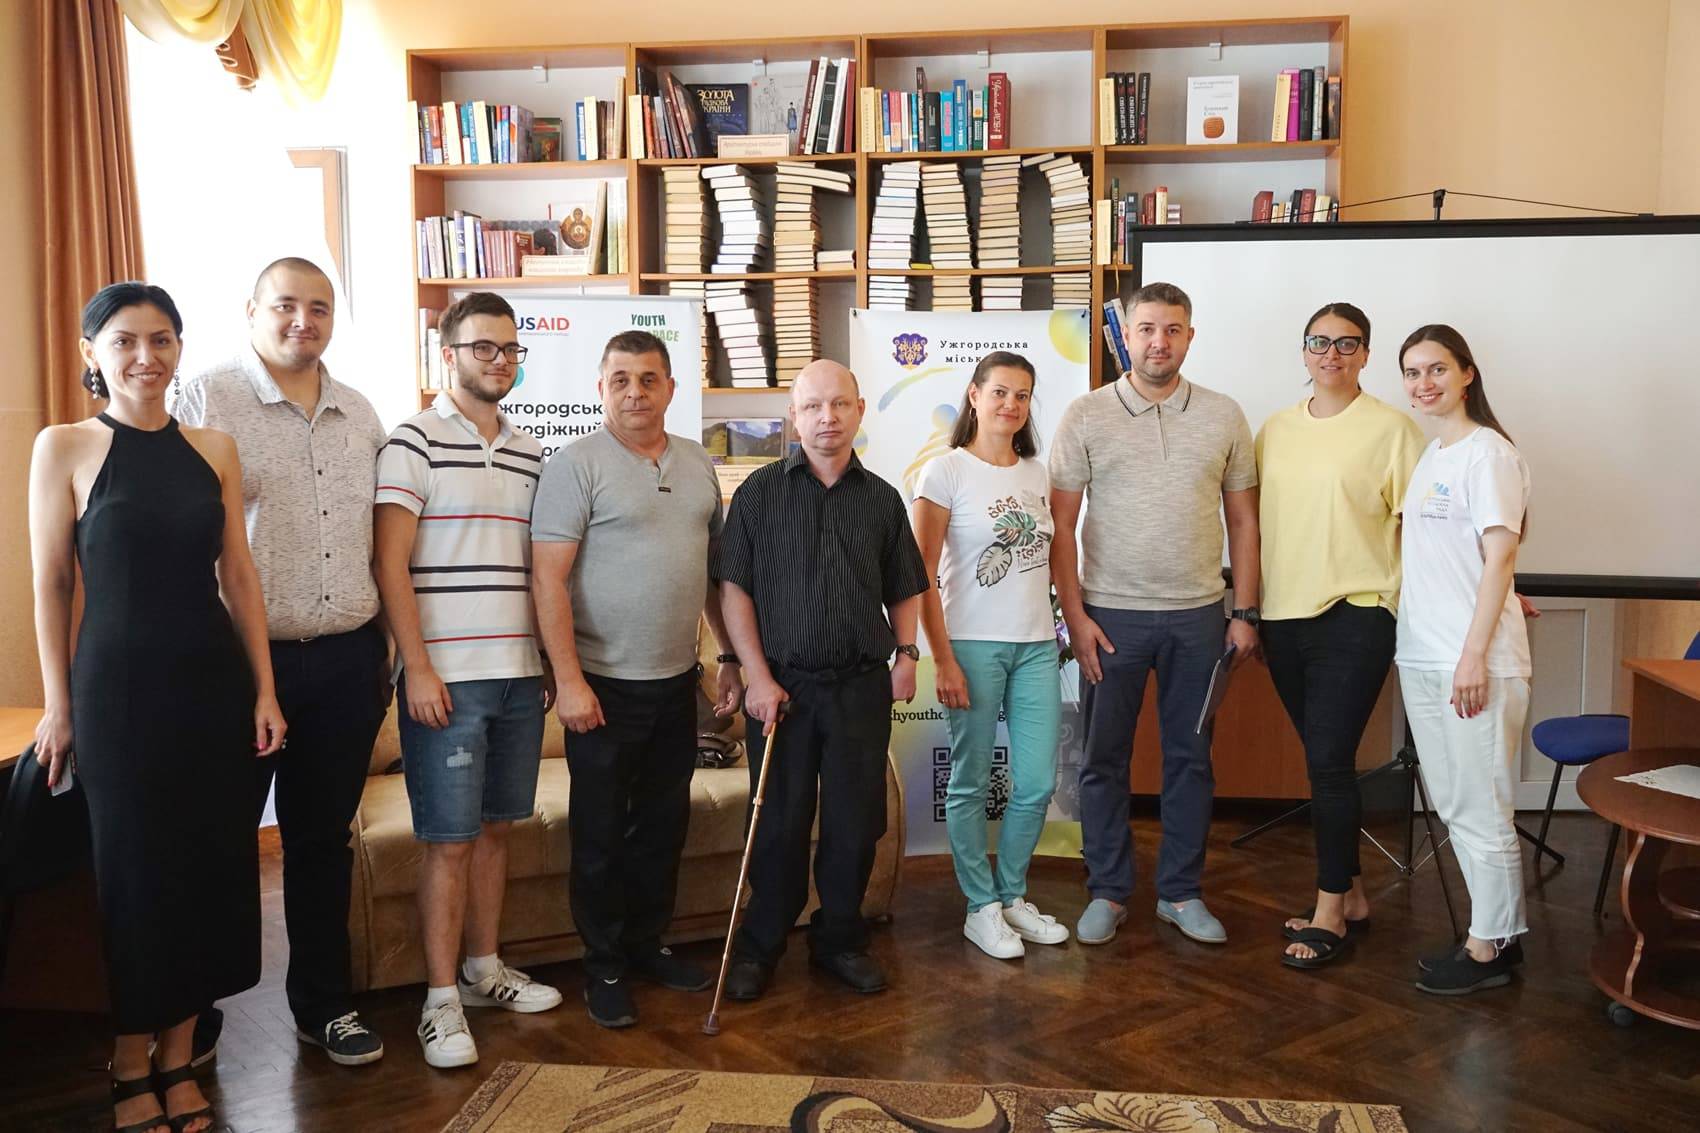 Ужгородська молодіжна рада організувала сьогодні у міській бібліотеці панельні дискусії «Молодіжна політика очима молоді»